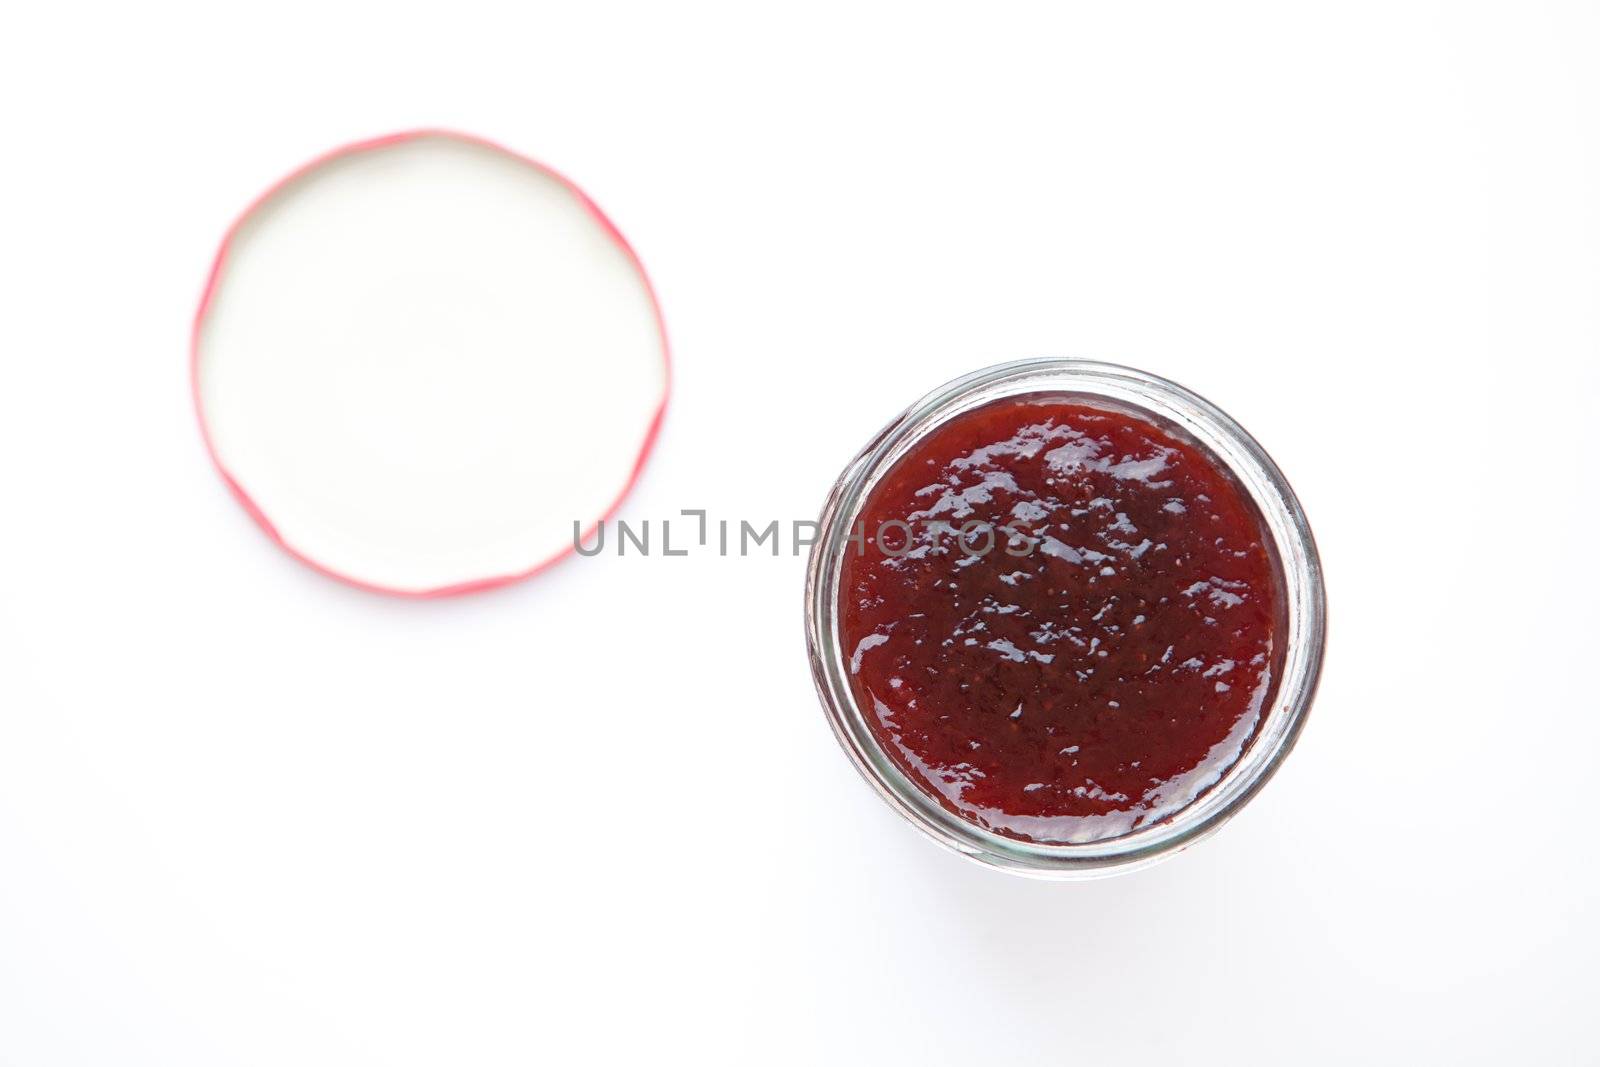 Jar of jam by Wavebreakmedia